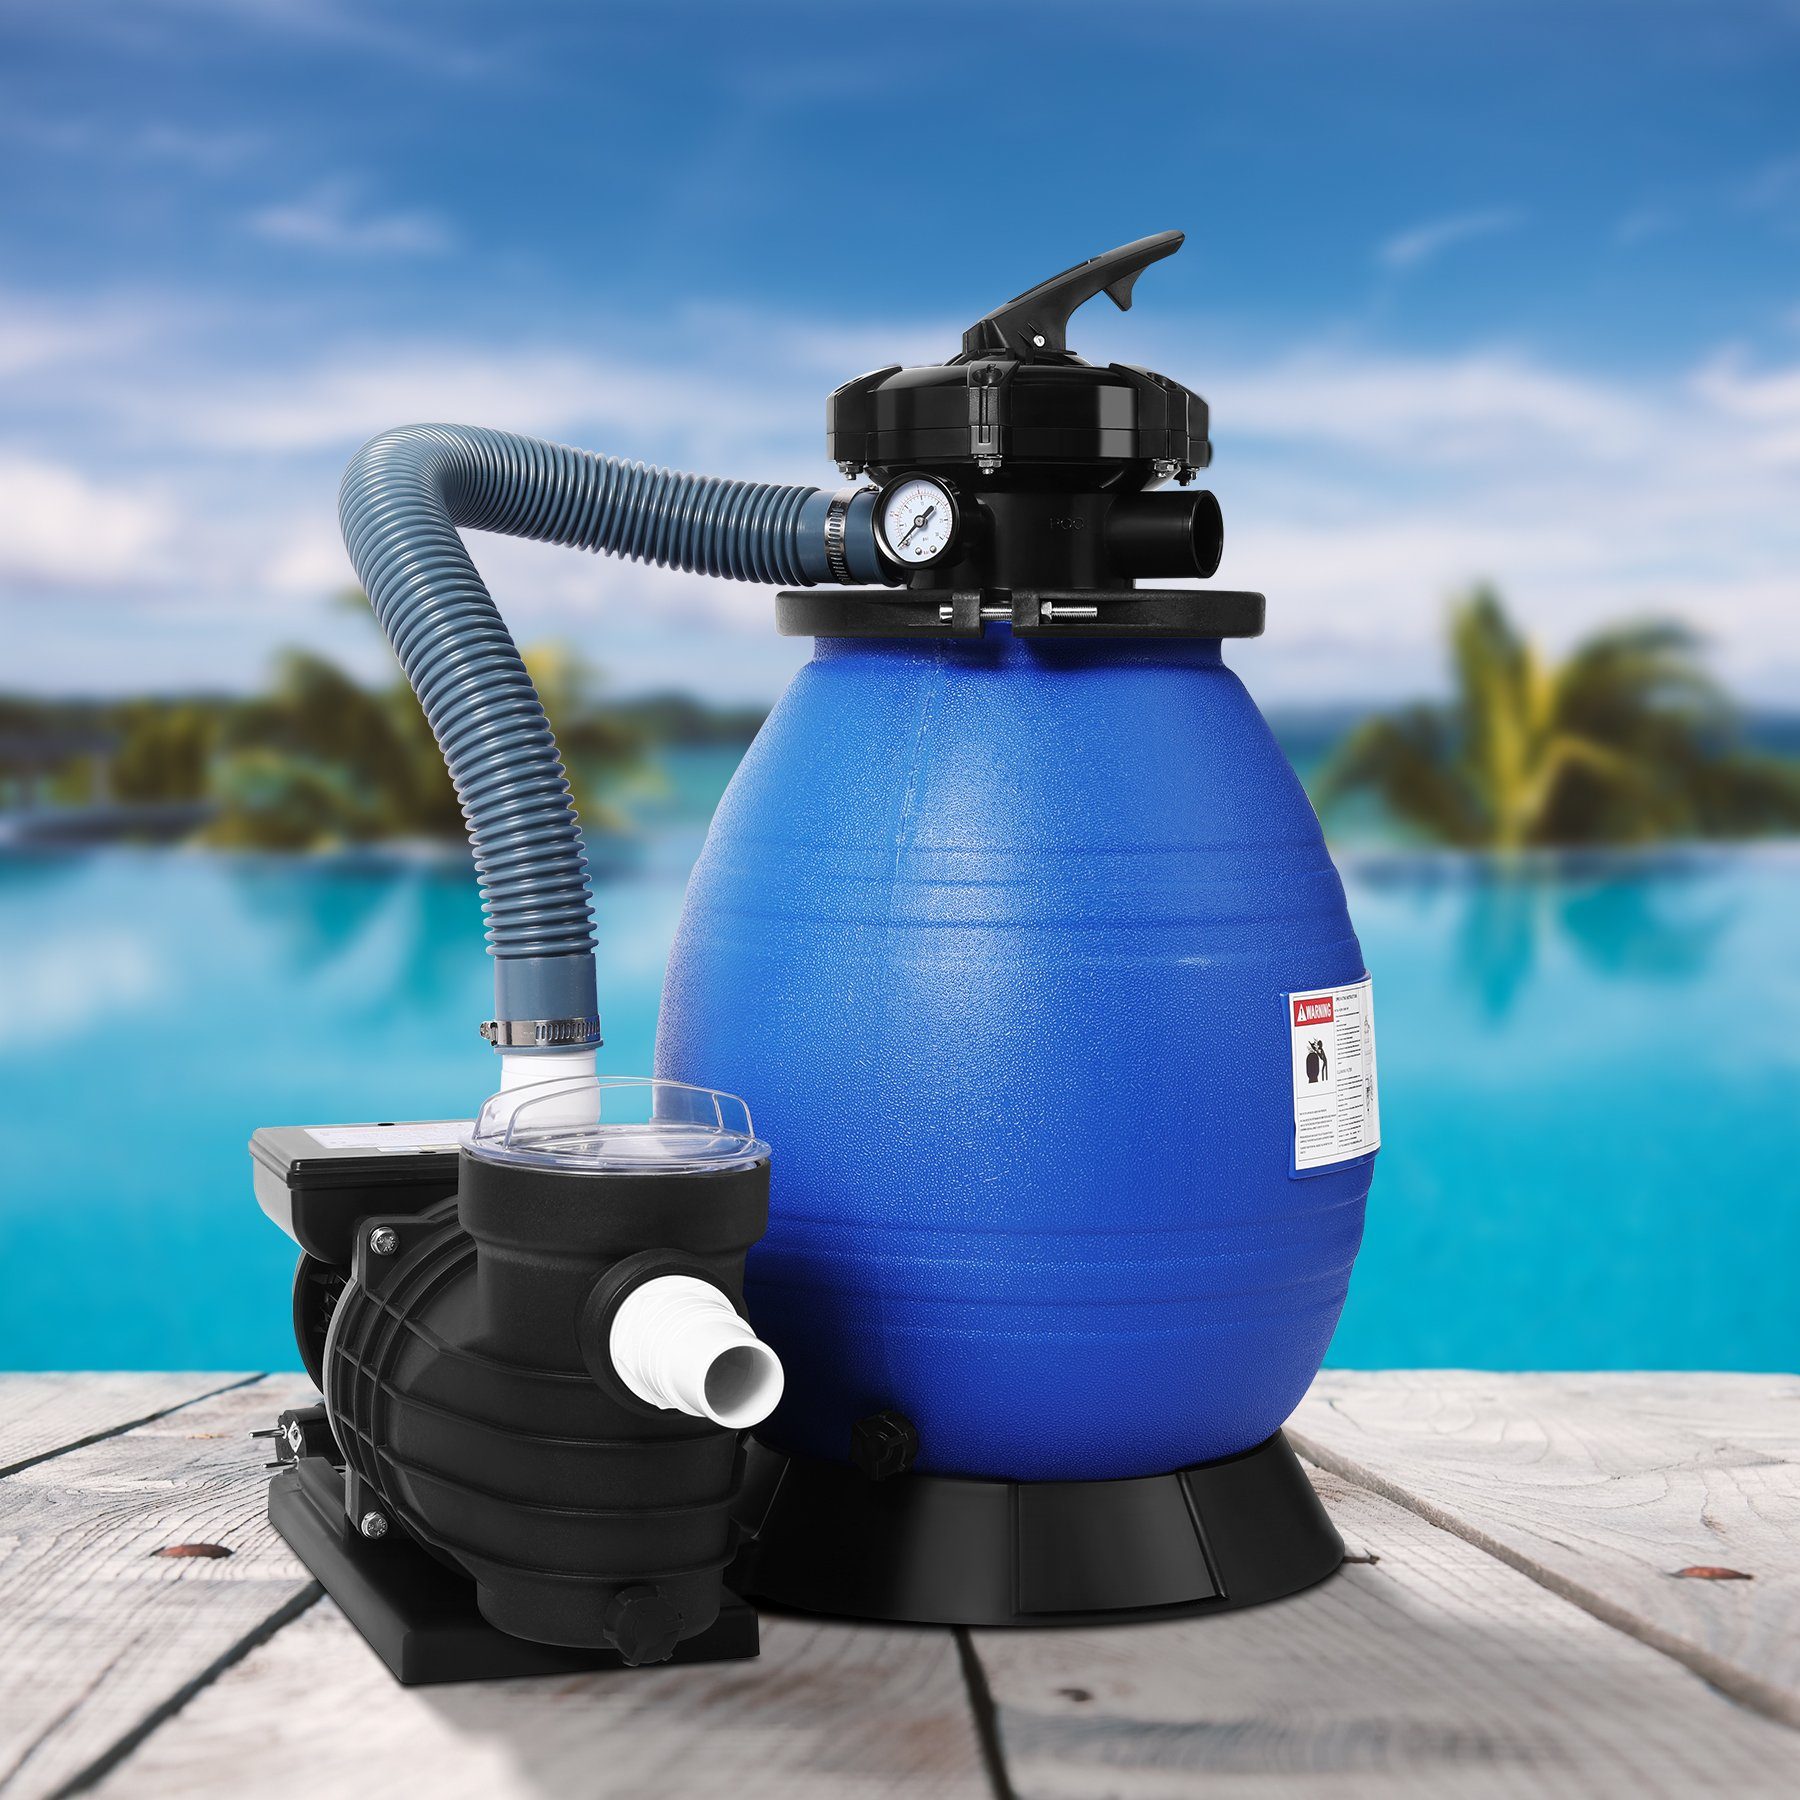 HomeMiYN Pool-Filterpumpe Sandfilteranlage Sandfilterpumpe 10,8m³/h  Poolfilter mit Druckanzeige Sandfilter für Pool und Schwimmbecken 370W